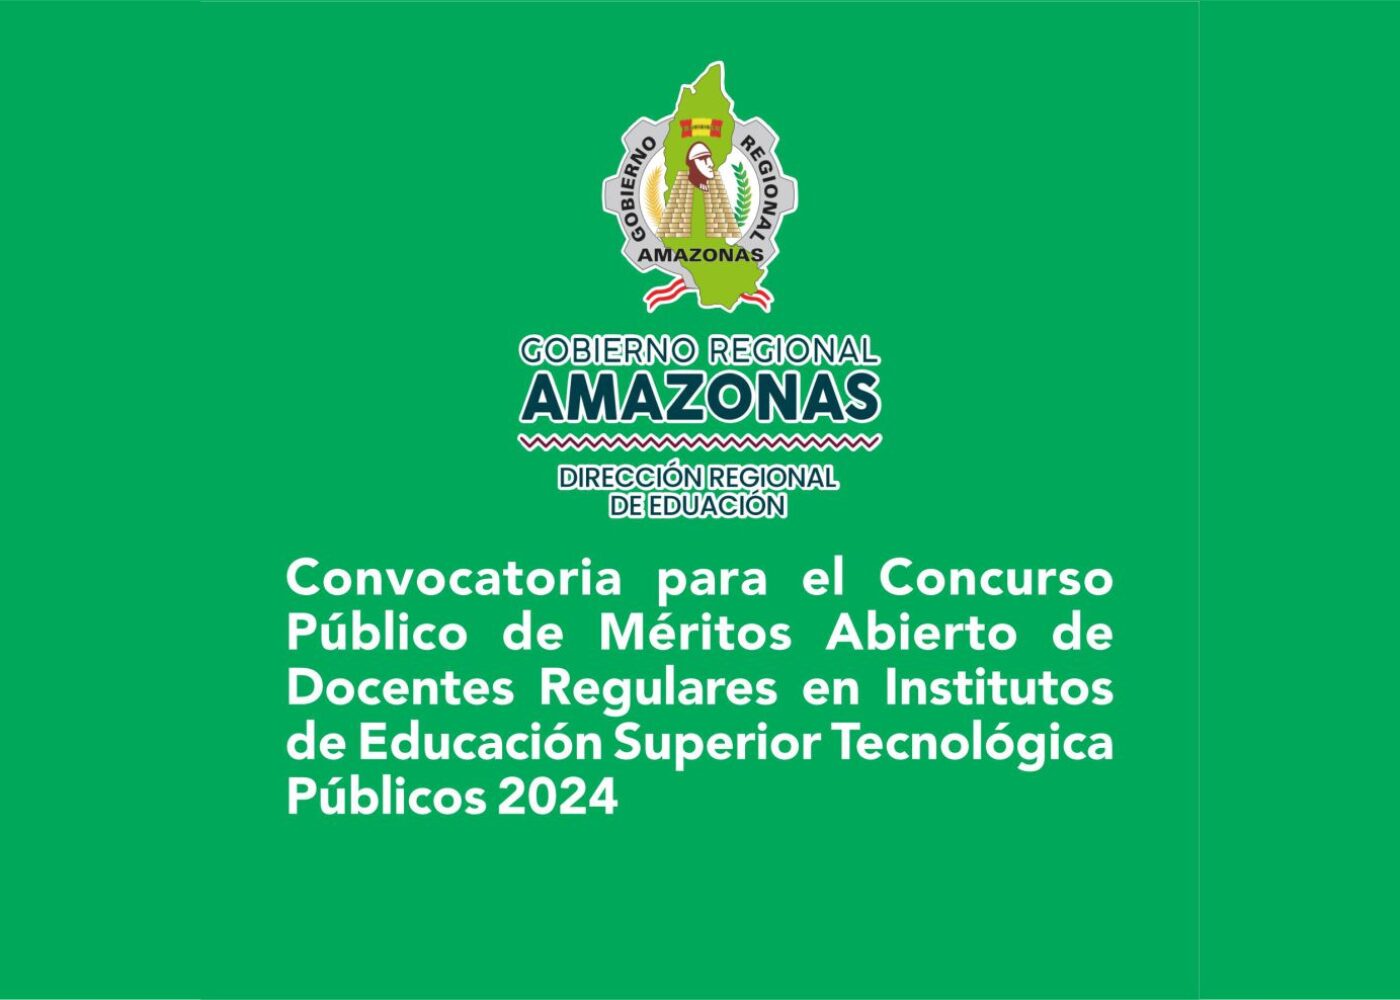 Convocatoria para el Concurso Público de Méritos Abierto de Docentes Regulares en Institutos de Educación Superior Tecnológica Públicos 2024